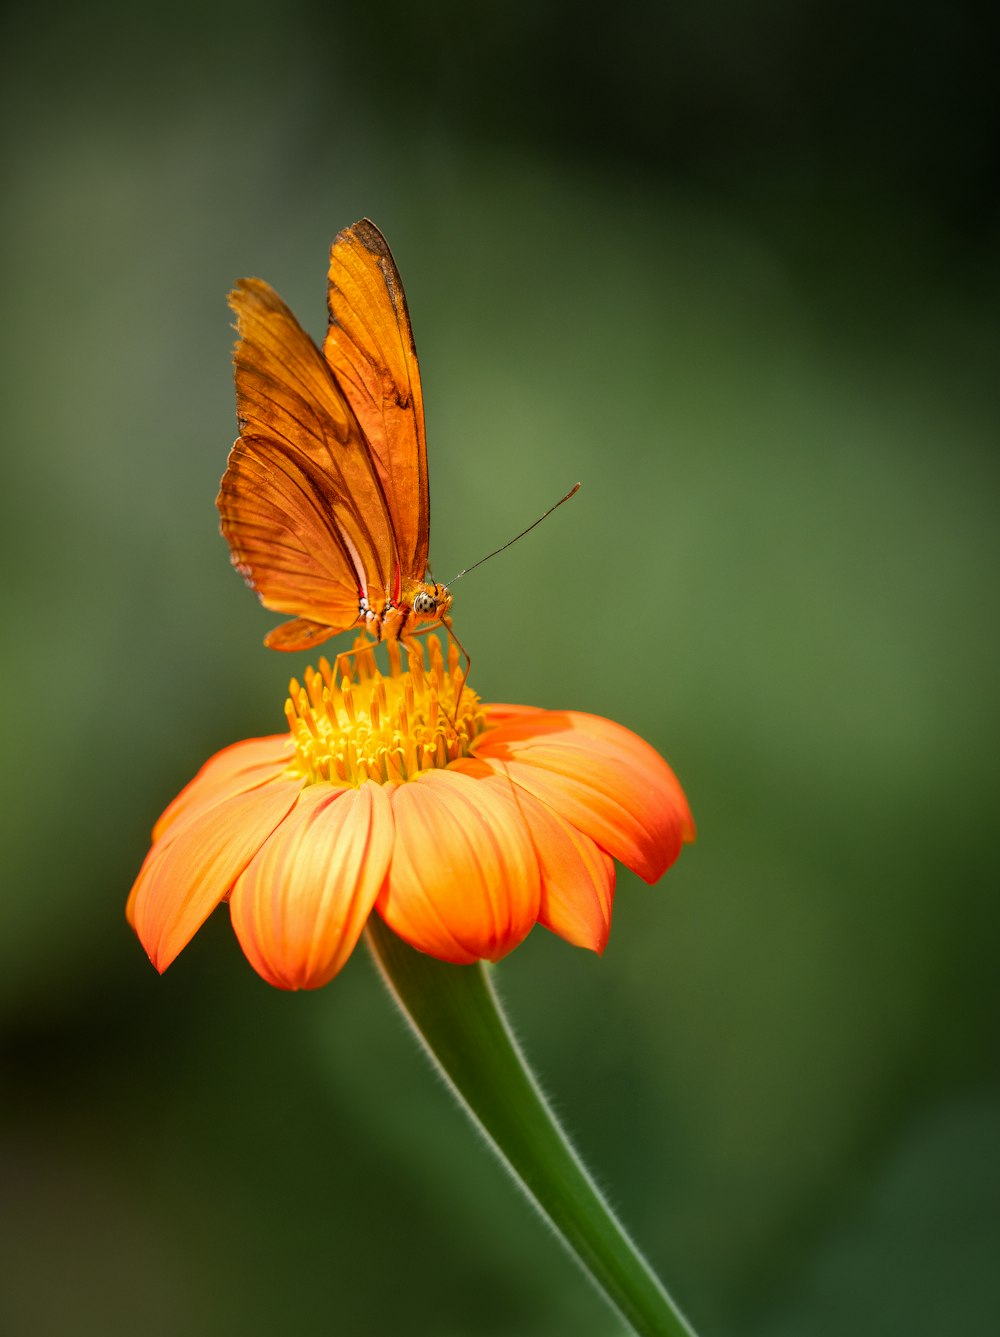 오렌지 꽃 위에 앉아있는 나비